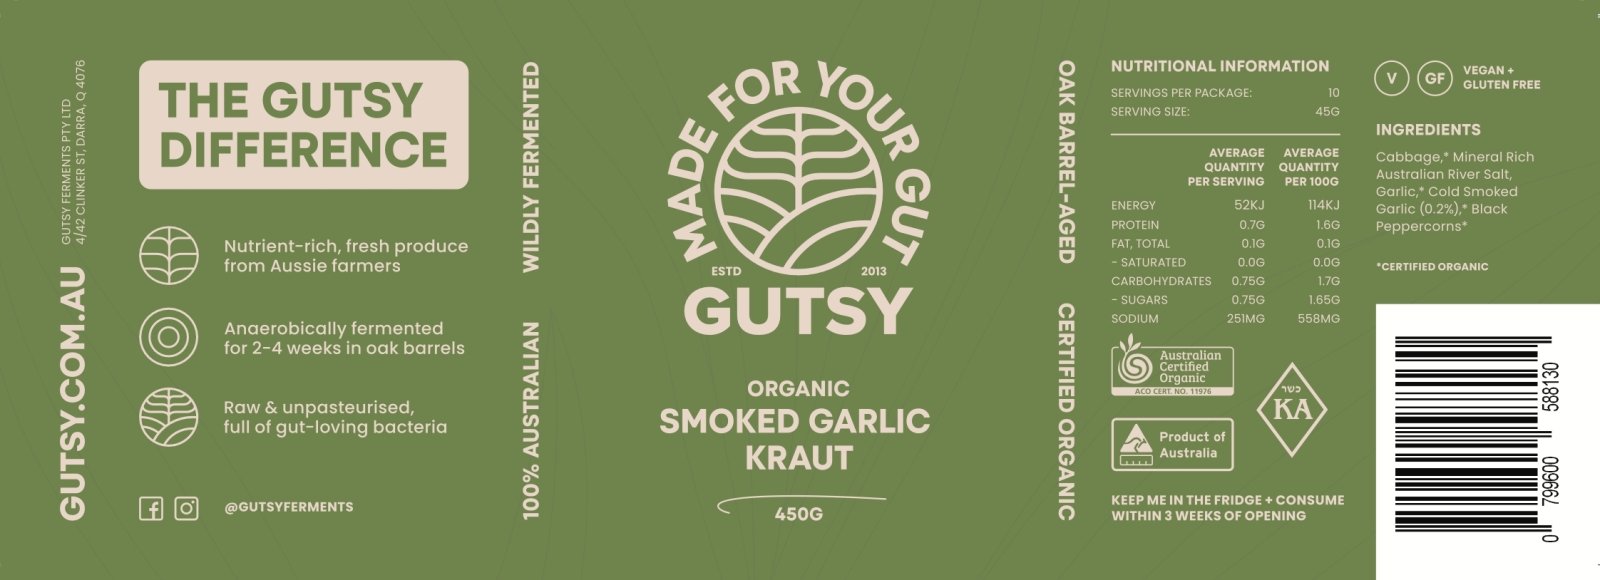 Organic Probiotic Smoked Garlic Kraut